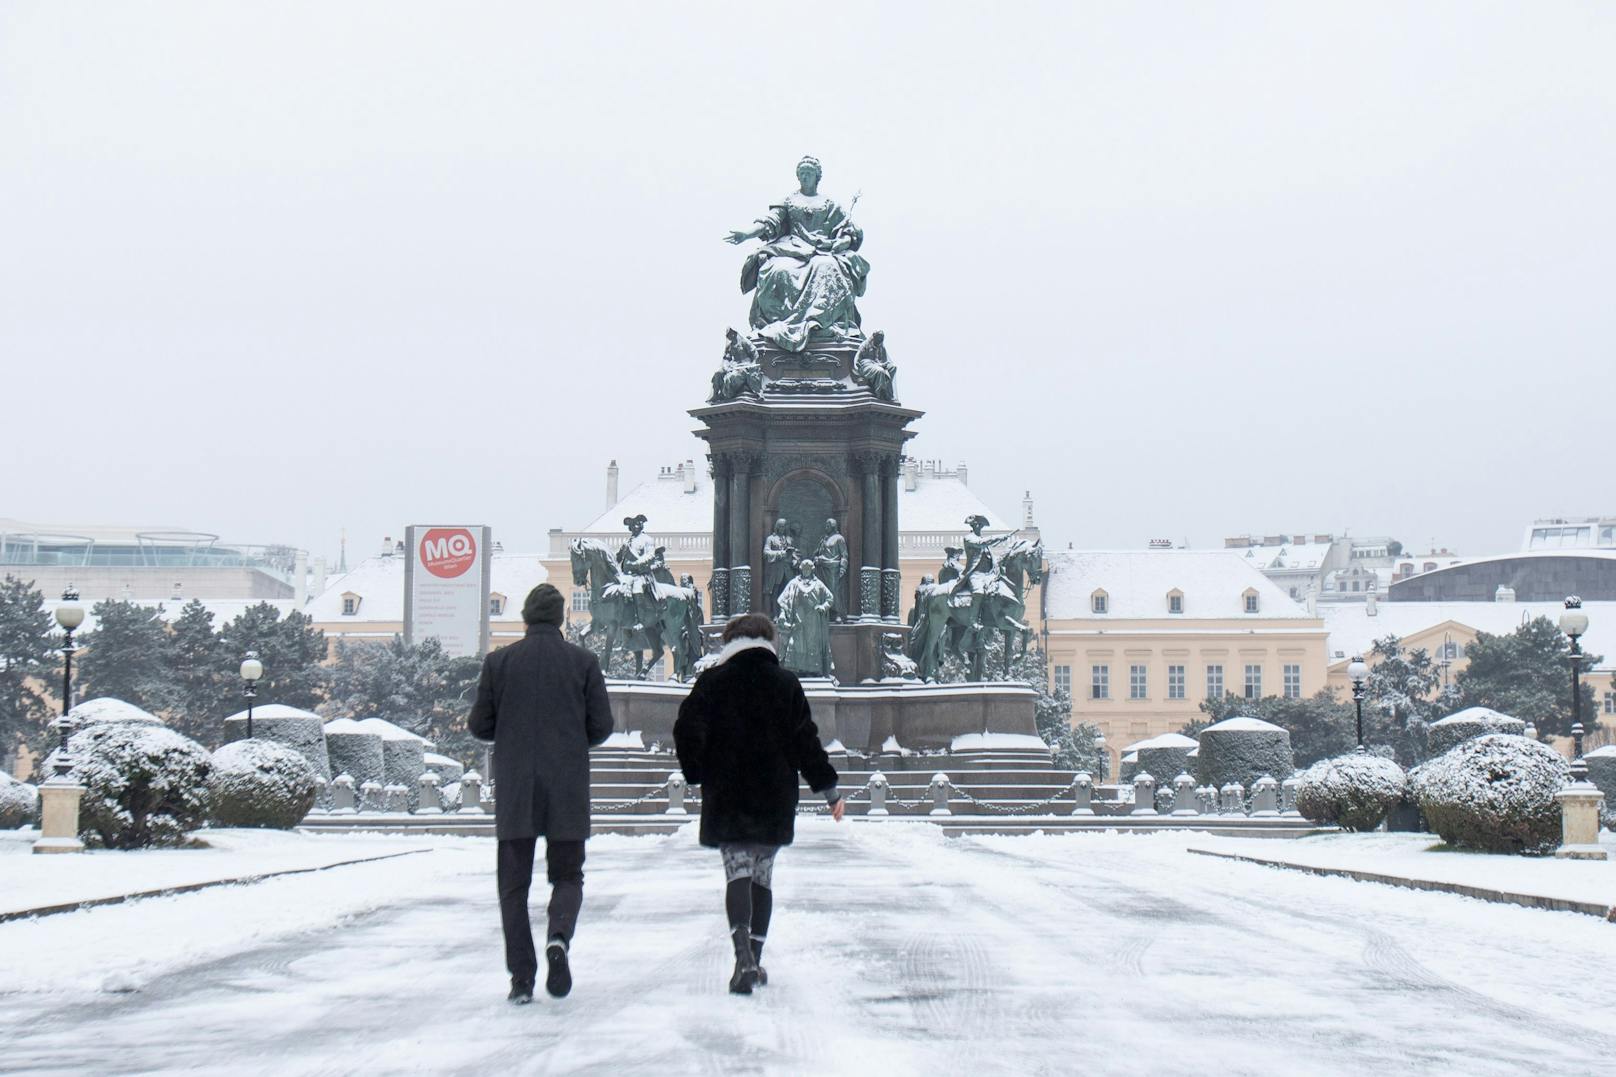 Schnee am Maria-Theresien-Platz in Wien. Archivbild